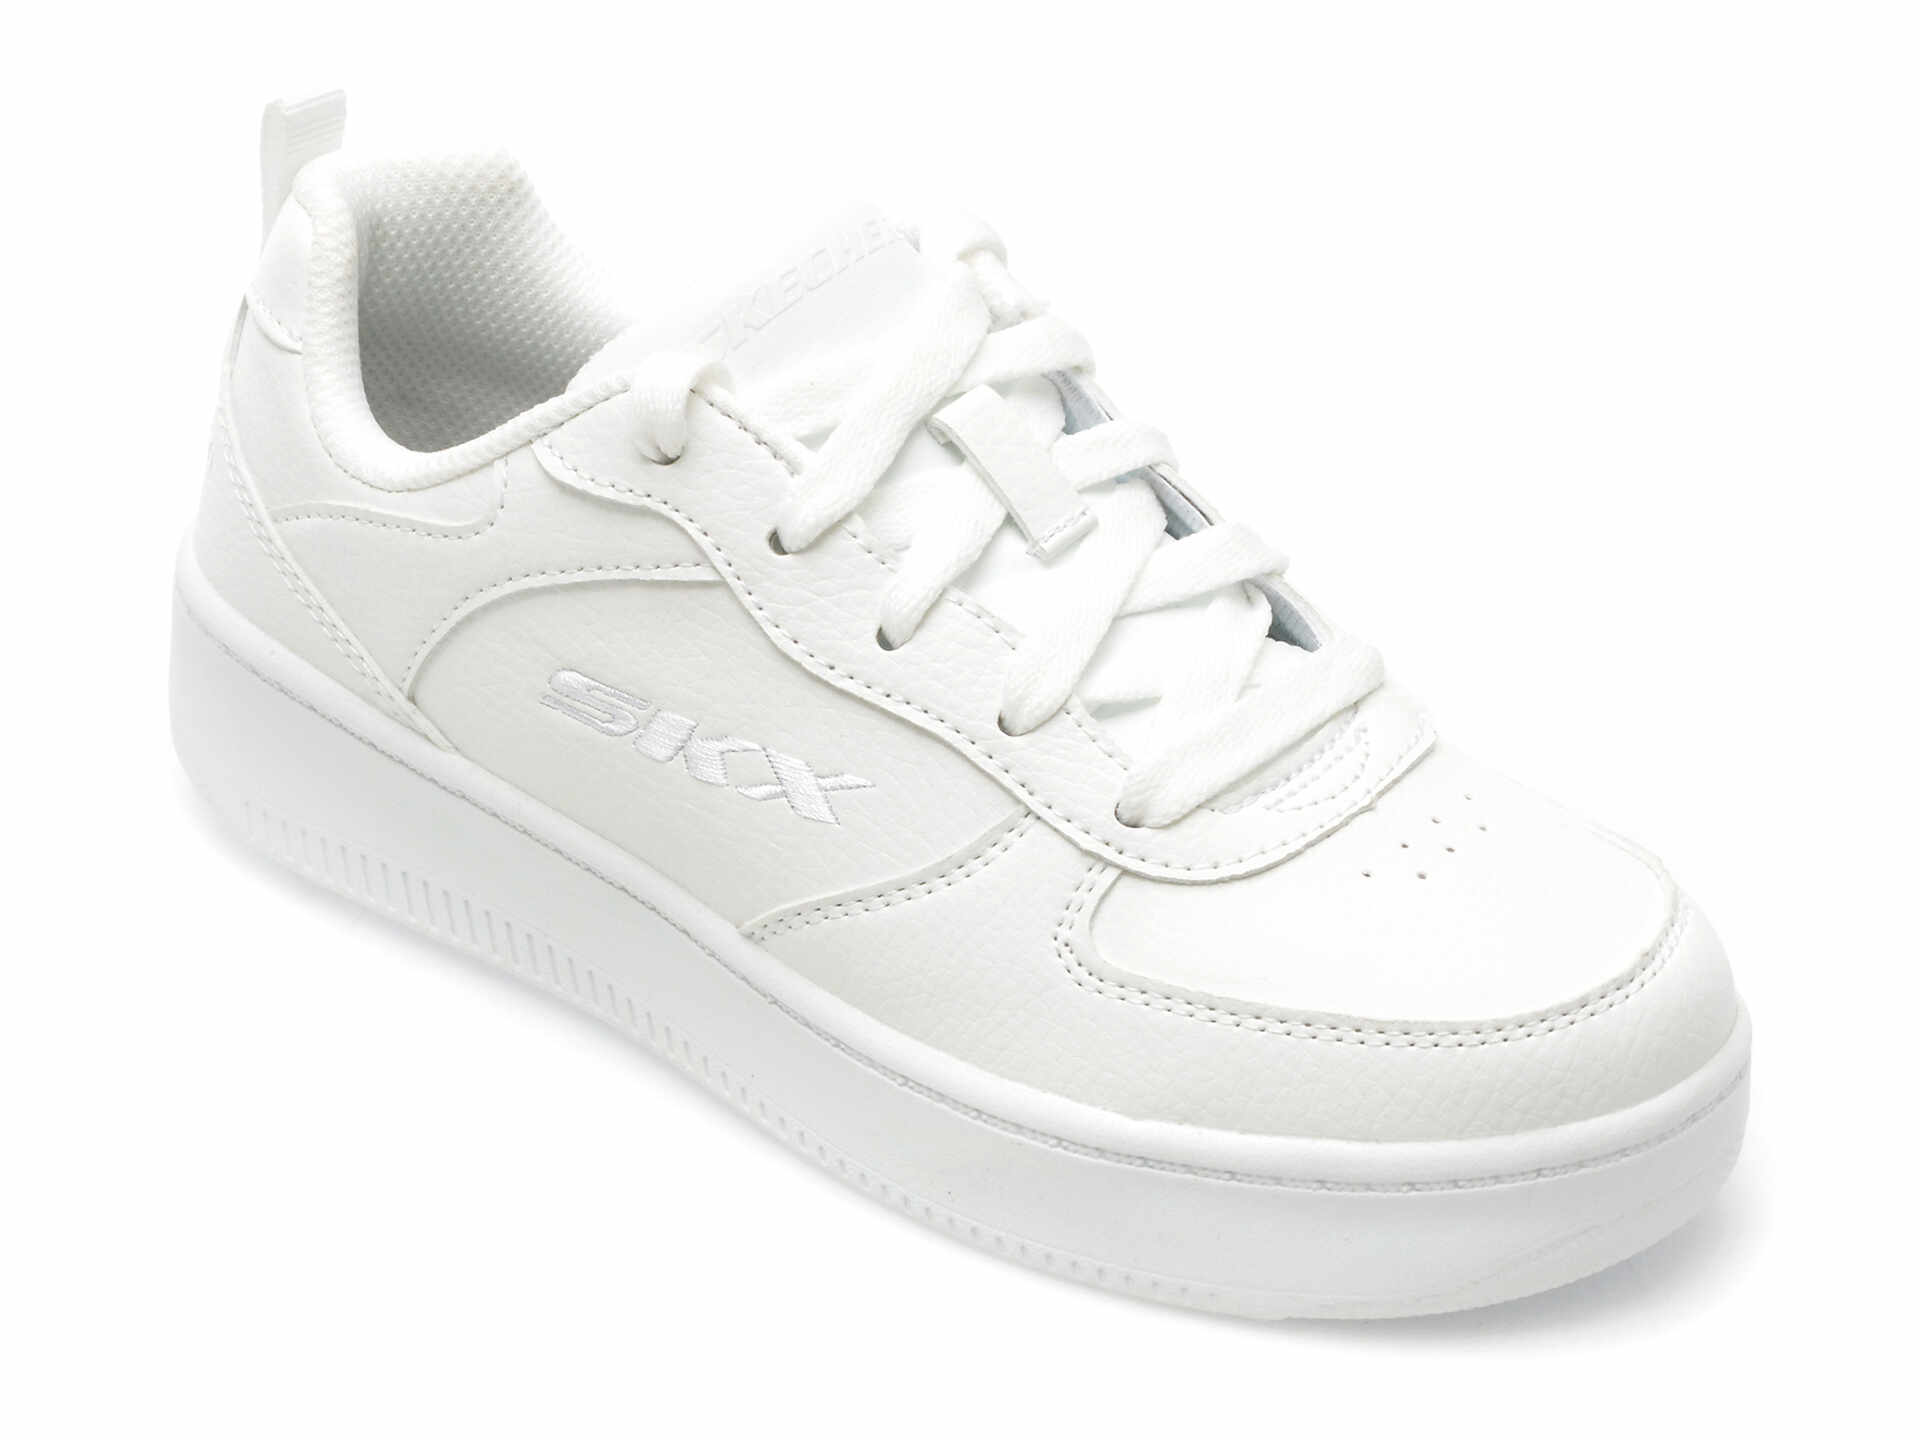 Pantofi SKECHERS albi, SPORT COURT 92, din piele ecologica